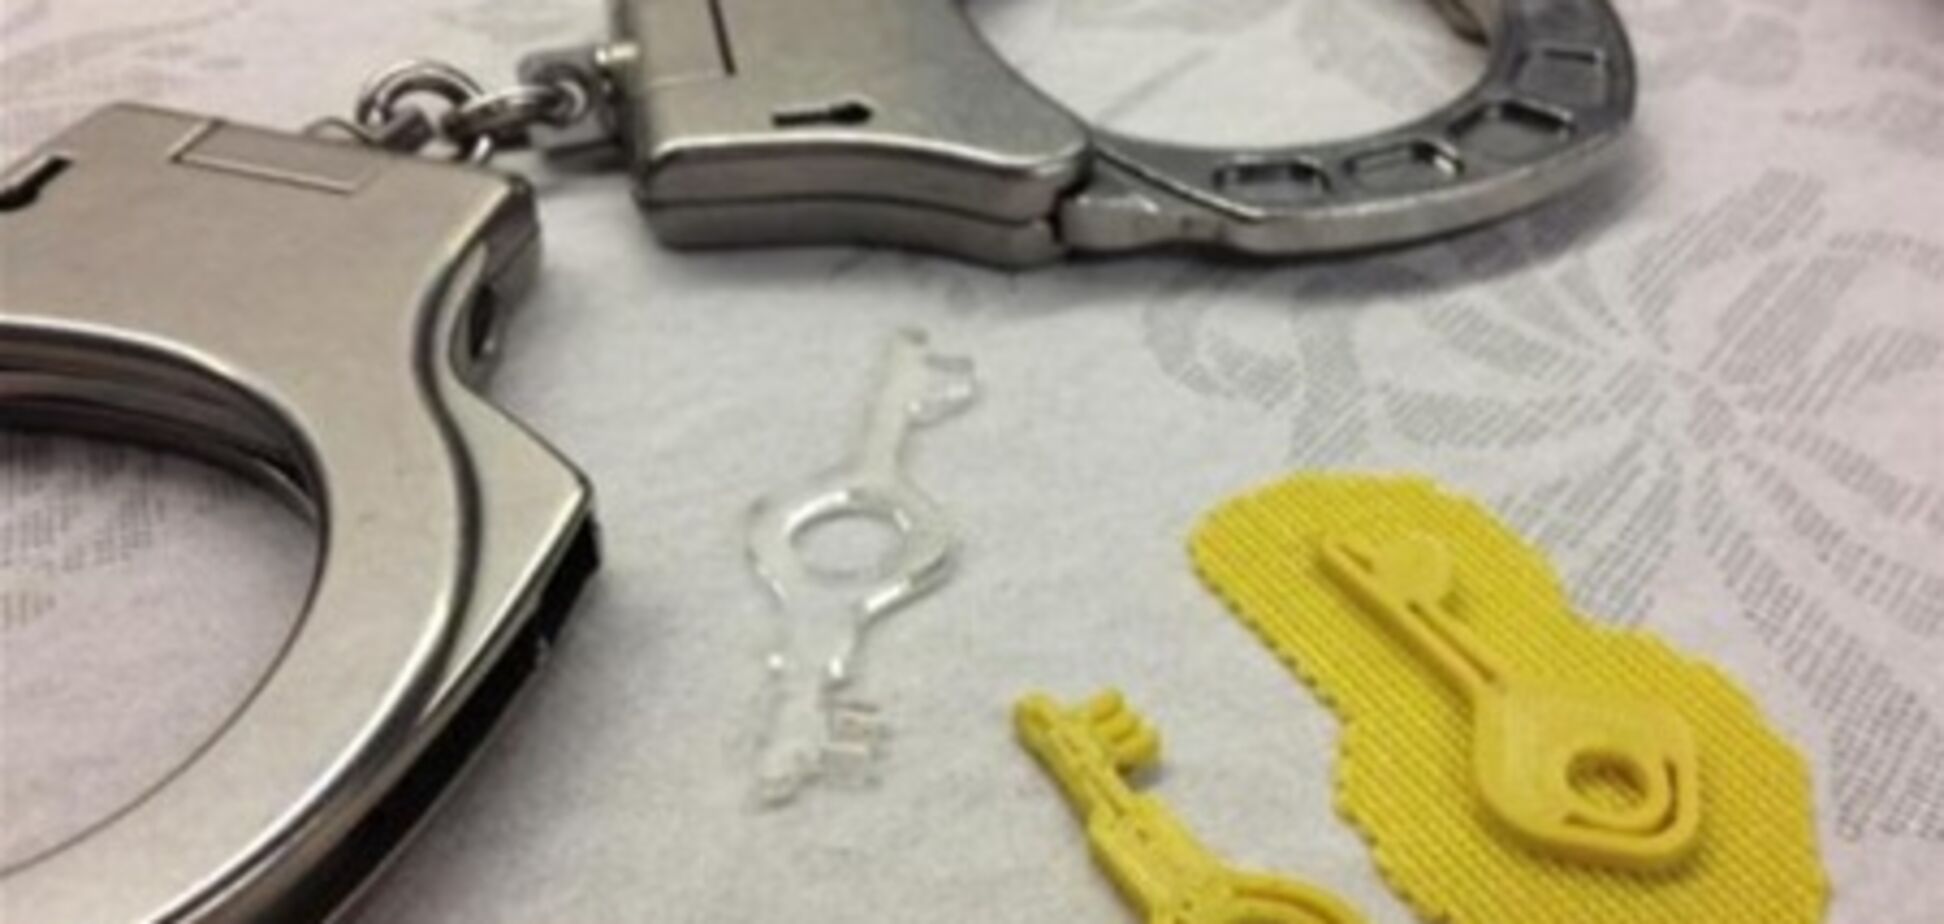 Хакер открыл наручники напечатанным на принтере ключом. Фото 